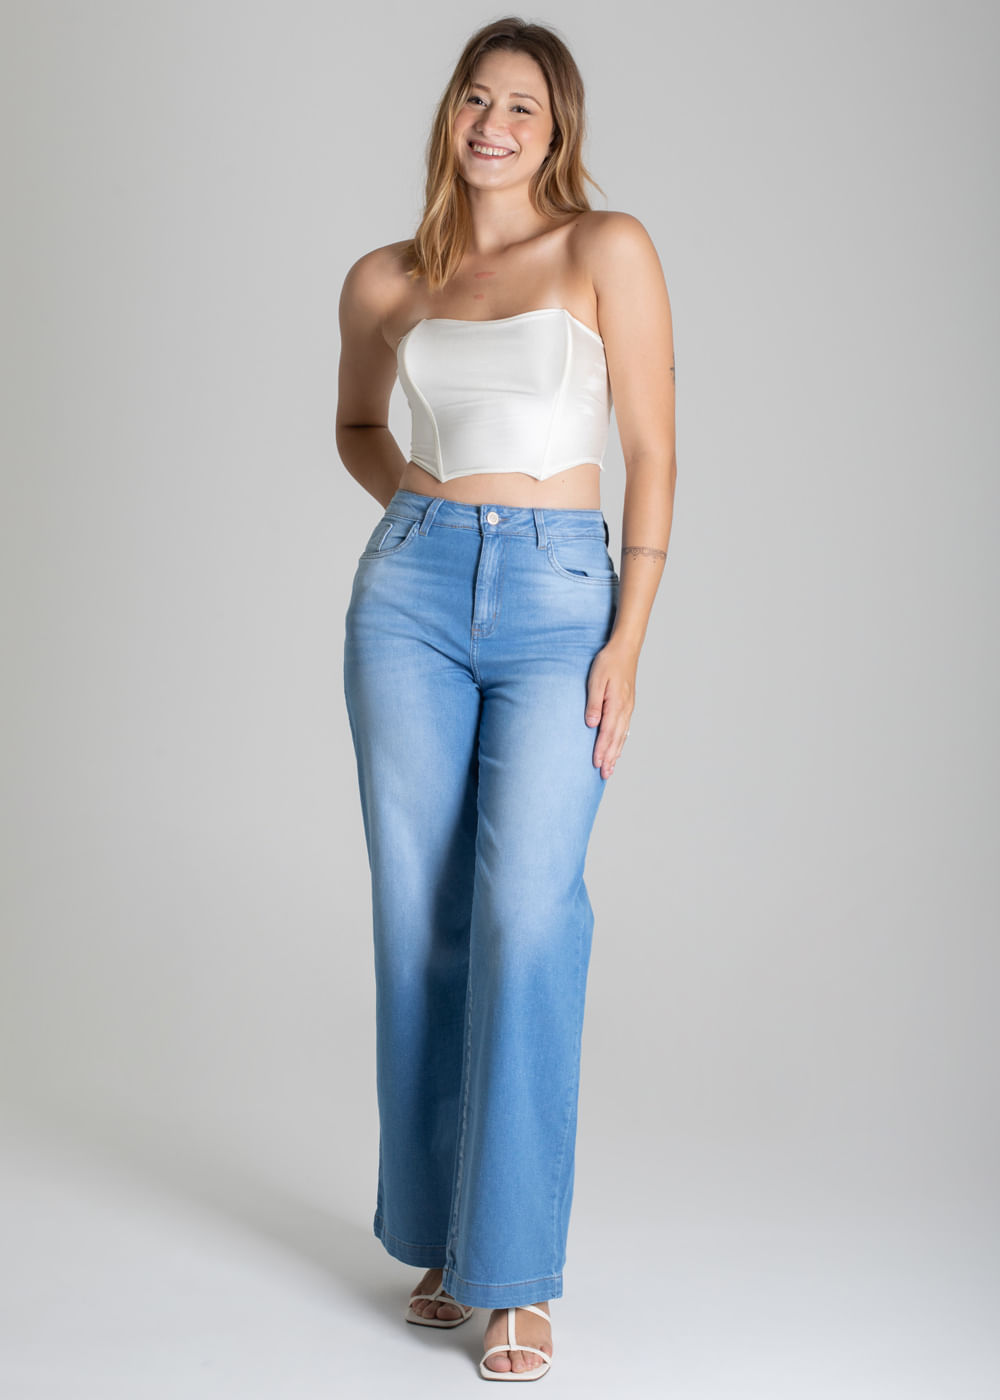 Sawary Jeans: conheça a coleção de jeans femininos e masculinos